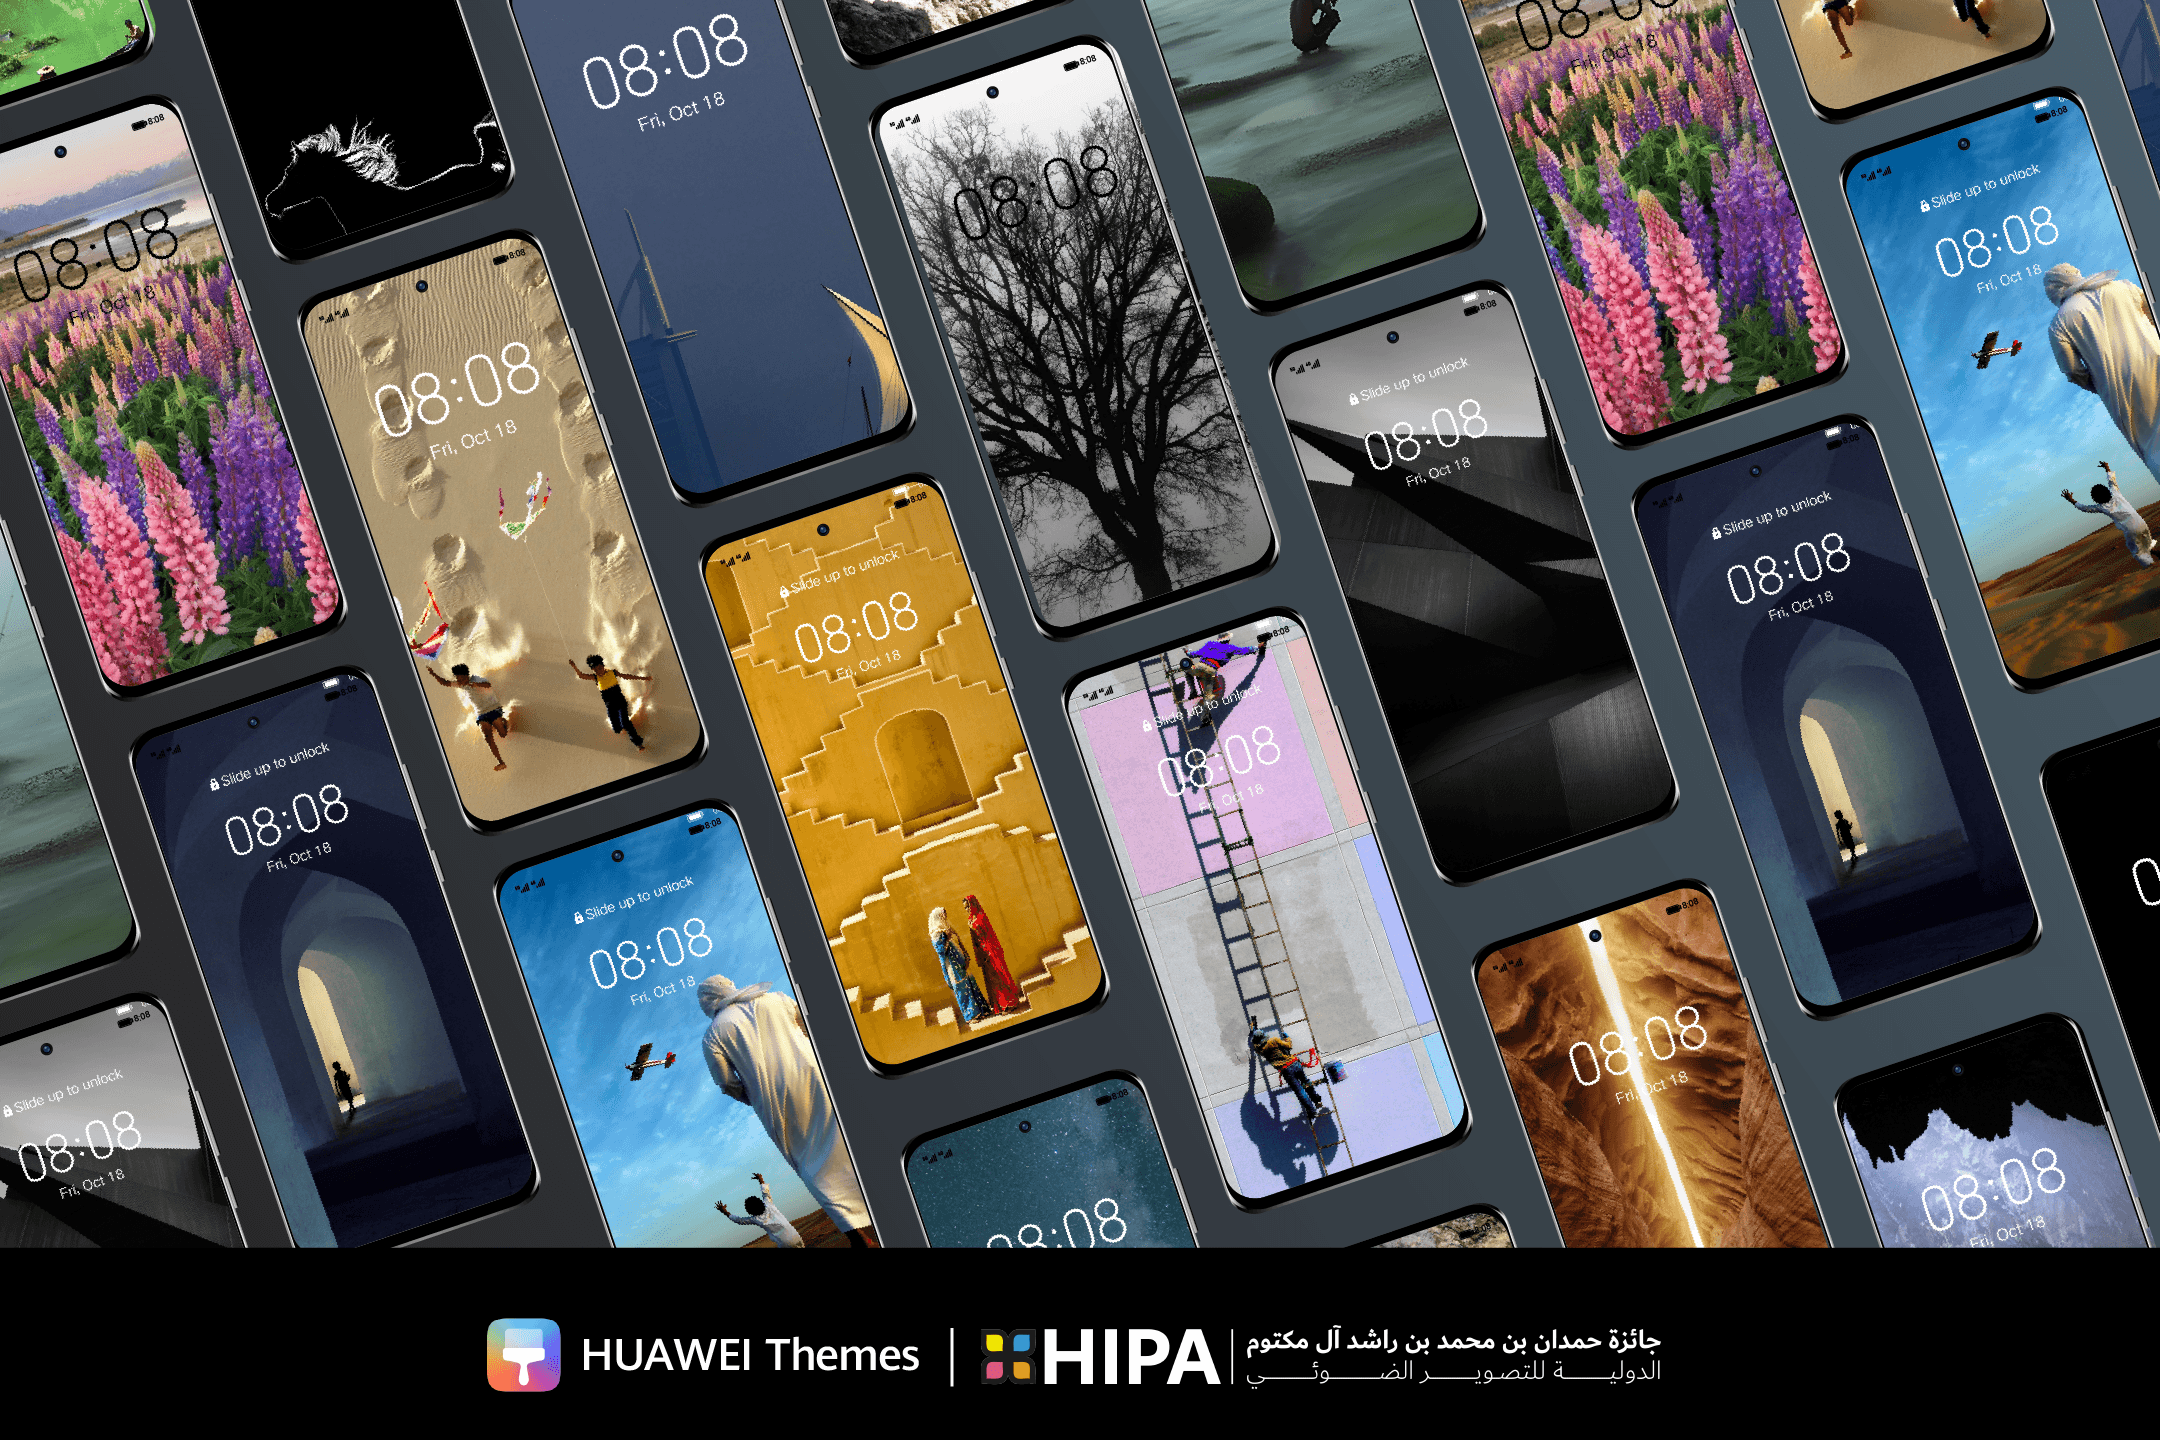  HUAWEI Themes وجائزة حمدان الدولية للتصوير الضوئي HIPA تقدمان لكم مجموعات جديدة من روائع التحف الرقمية لأجهزة هواوي الخاصة بكم 